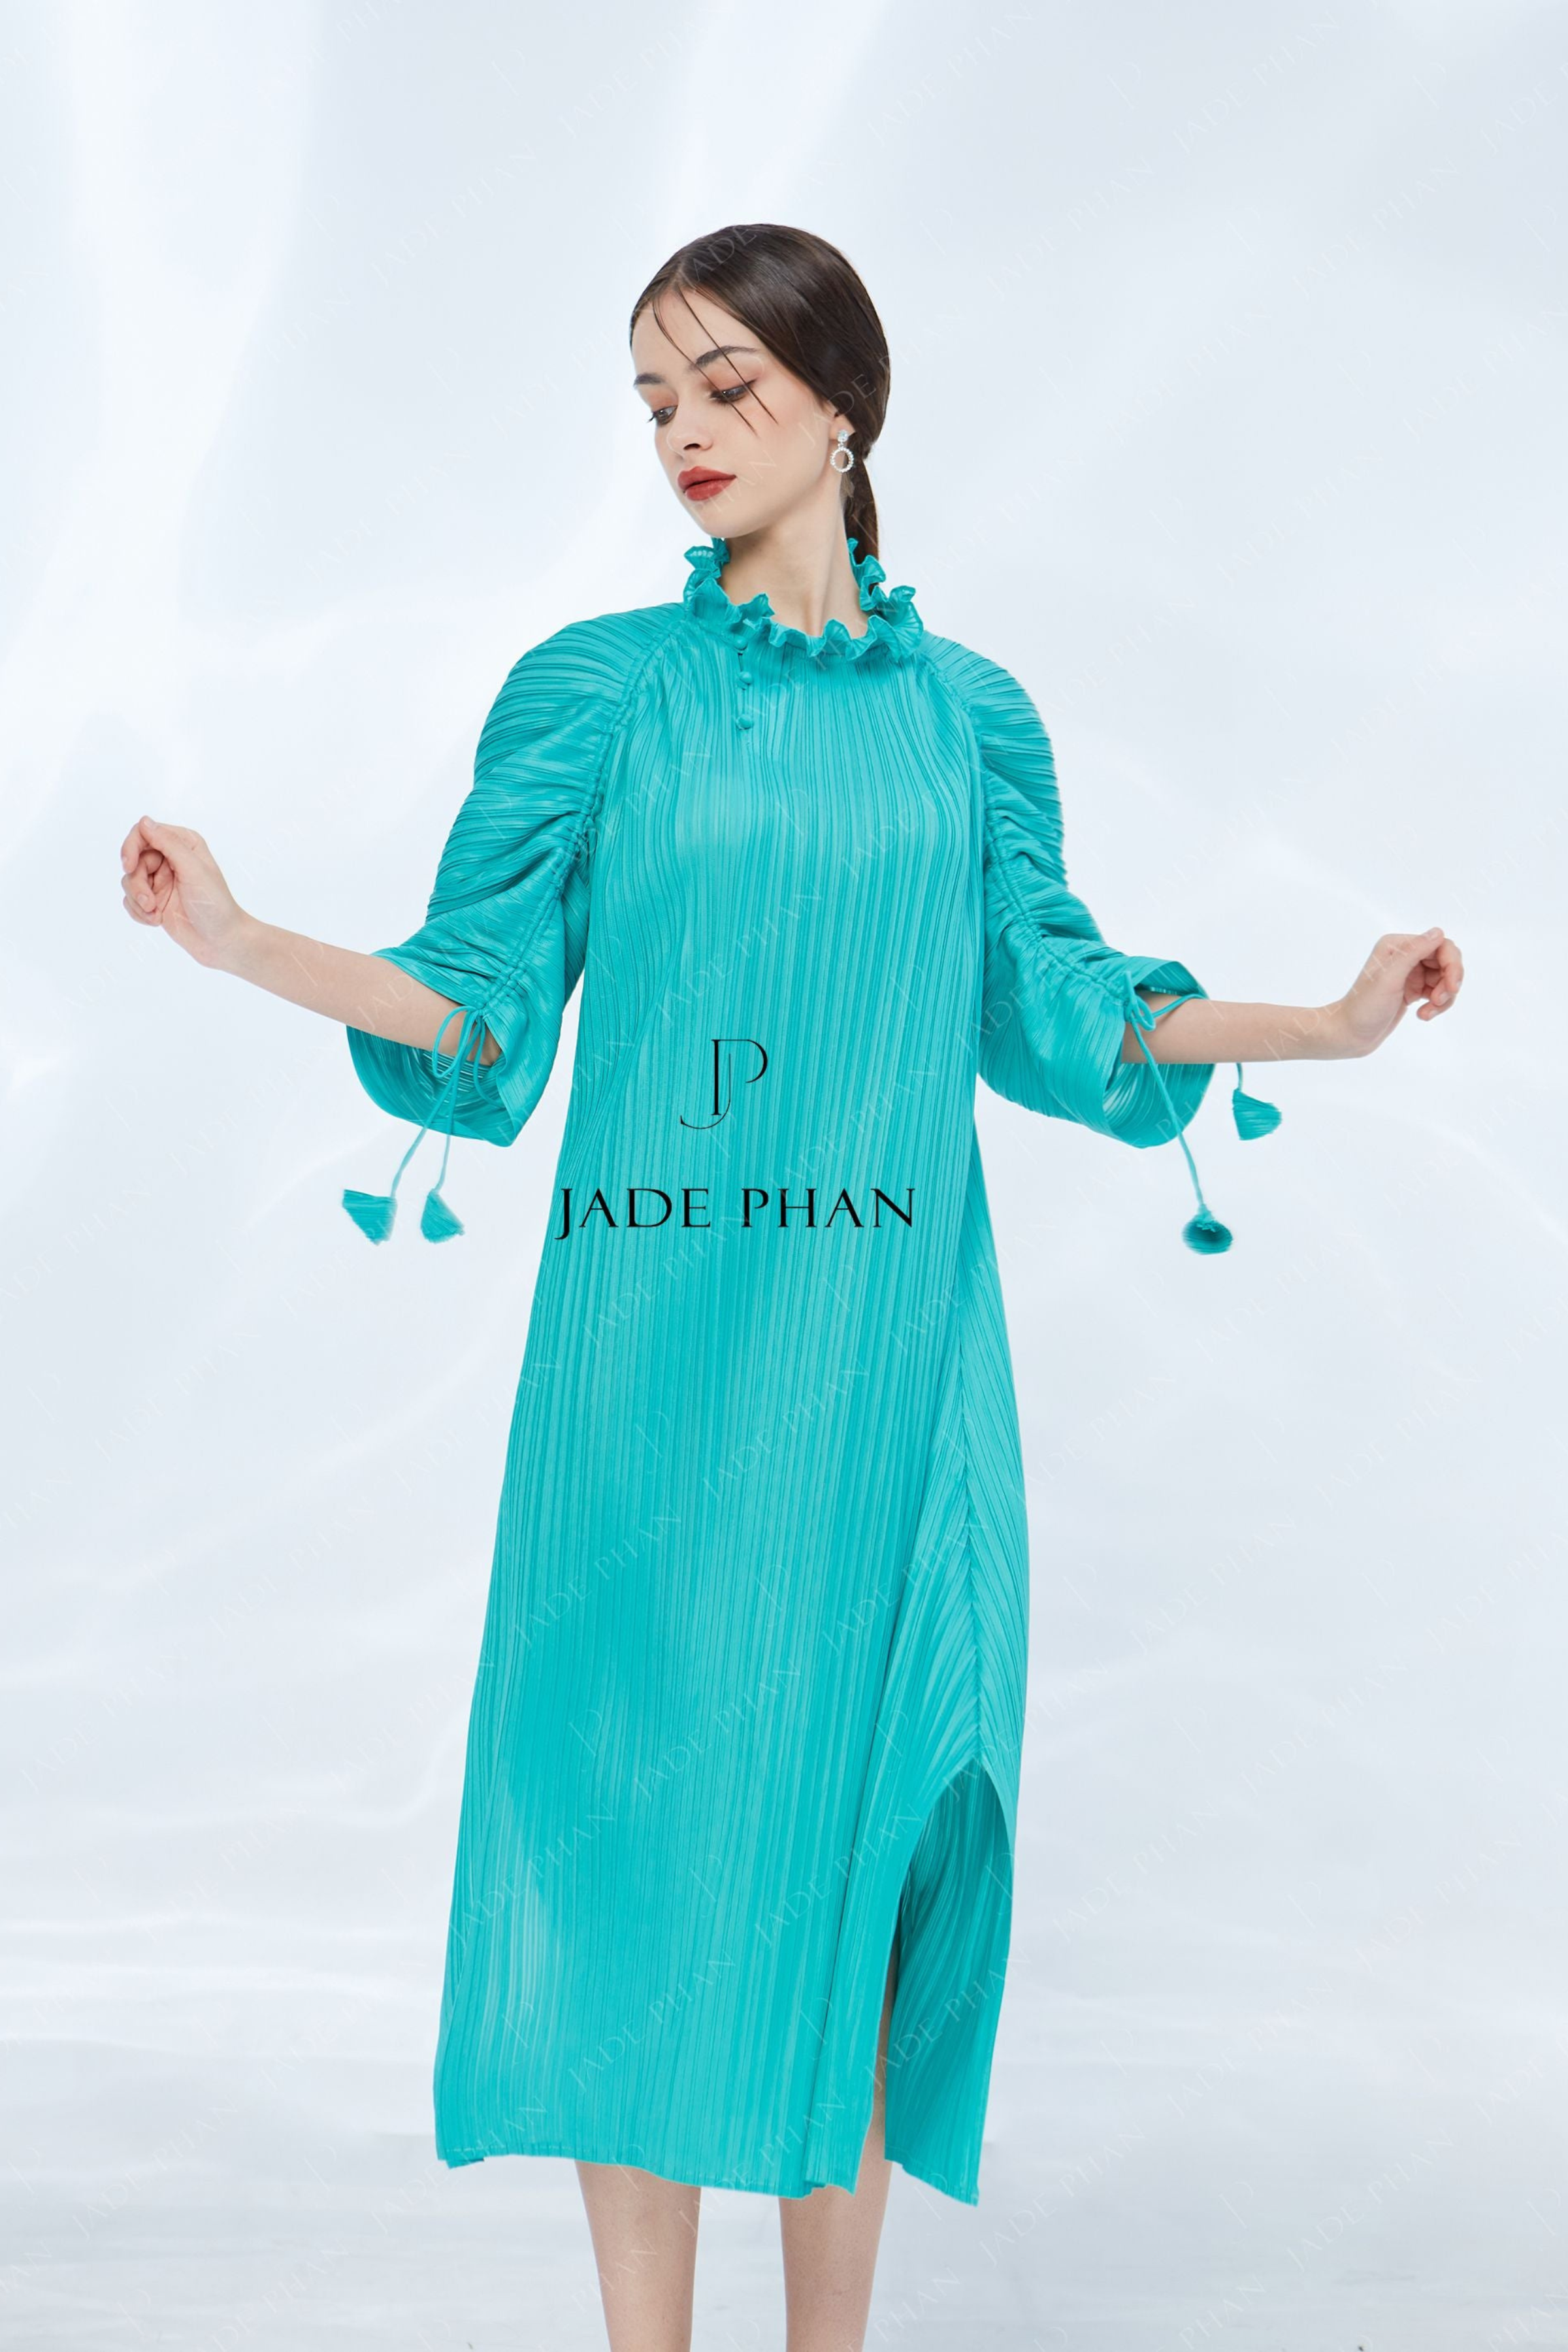 Váy đầm nữ Lamia Design LD133 màu xanh ngọc họa tiết hoa Paisley sang trọng  - Tìm Voucher